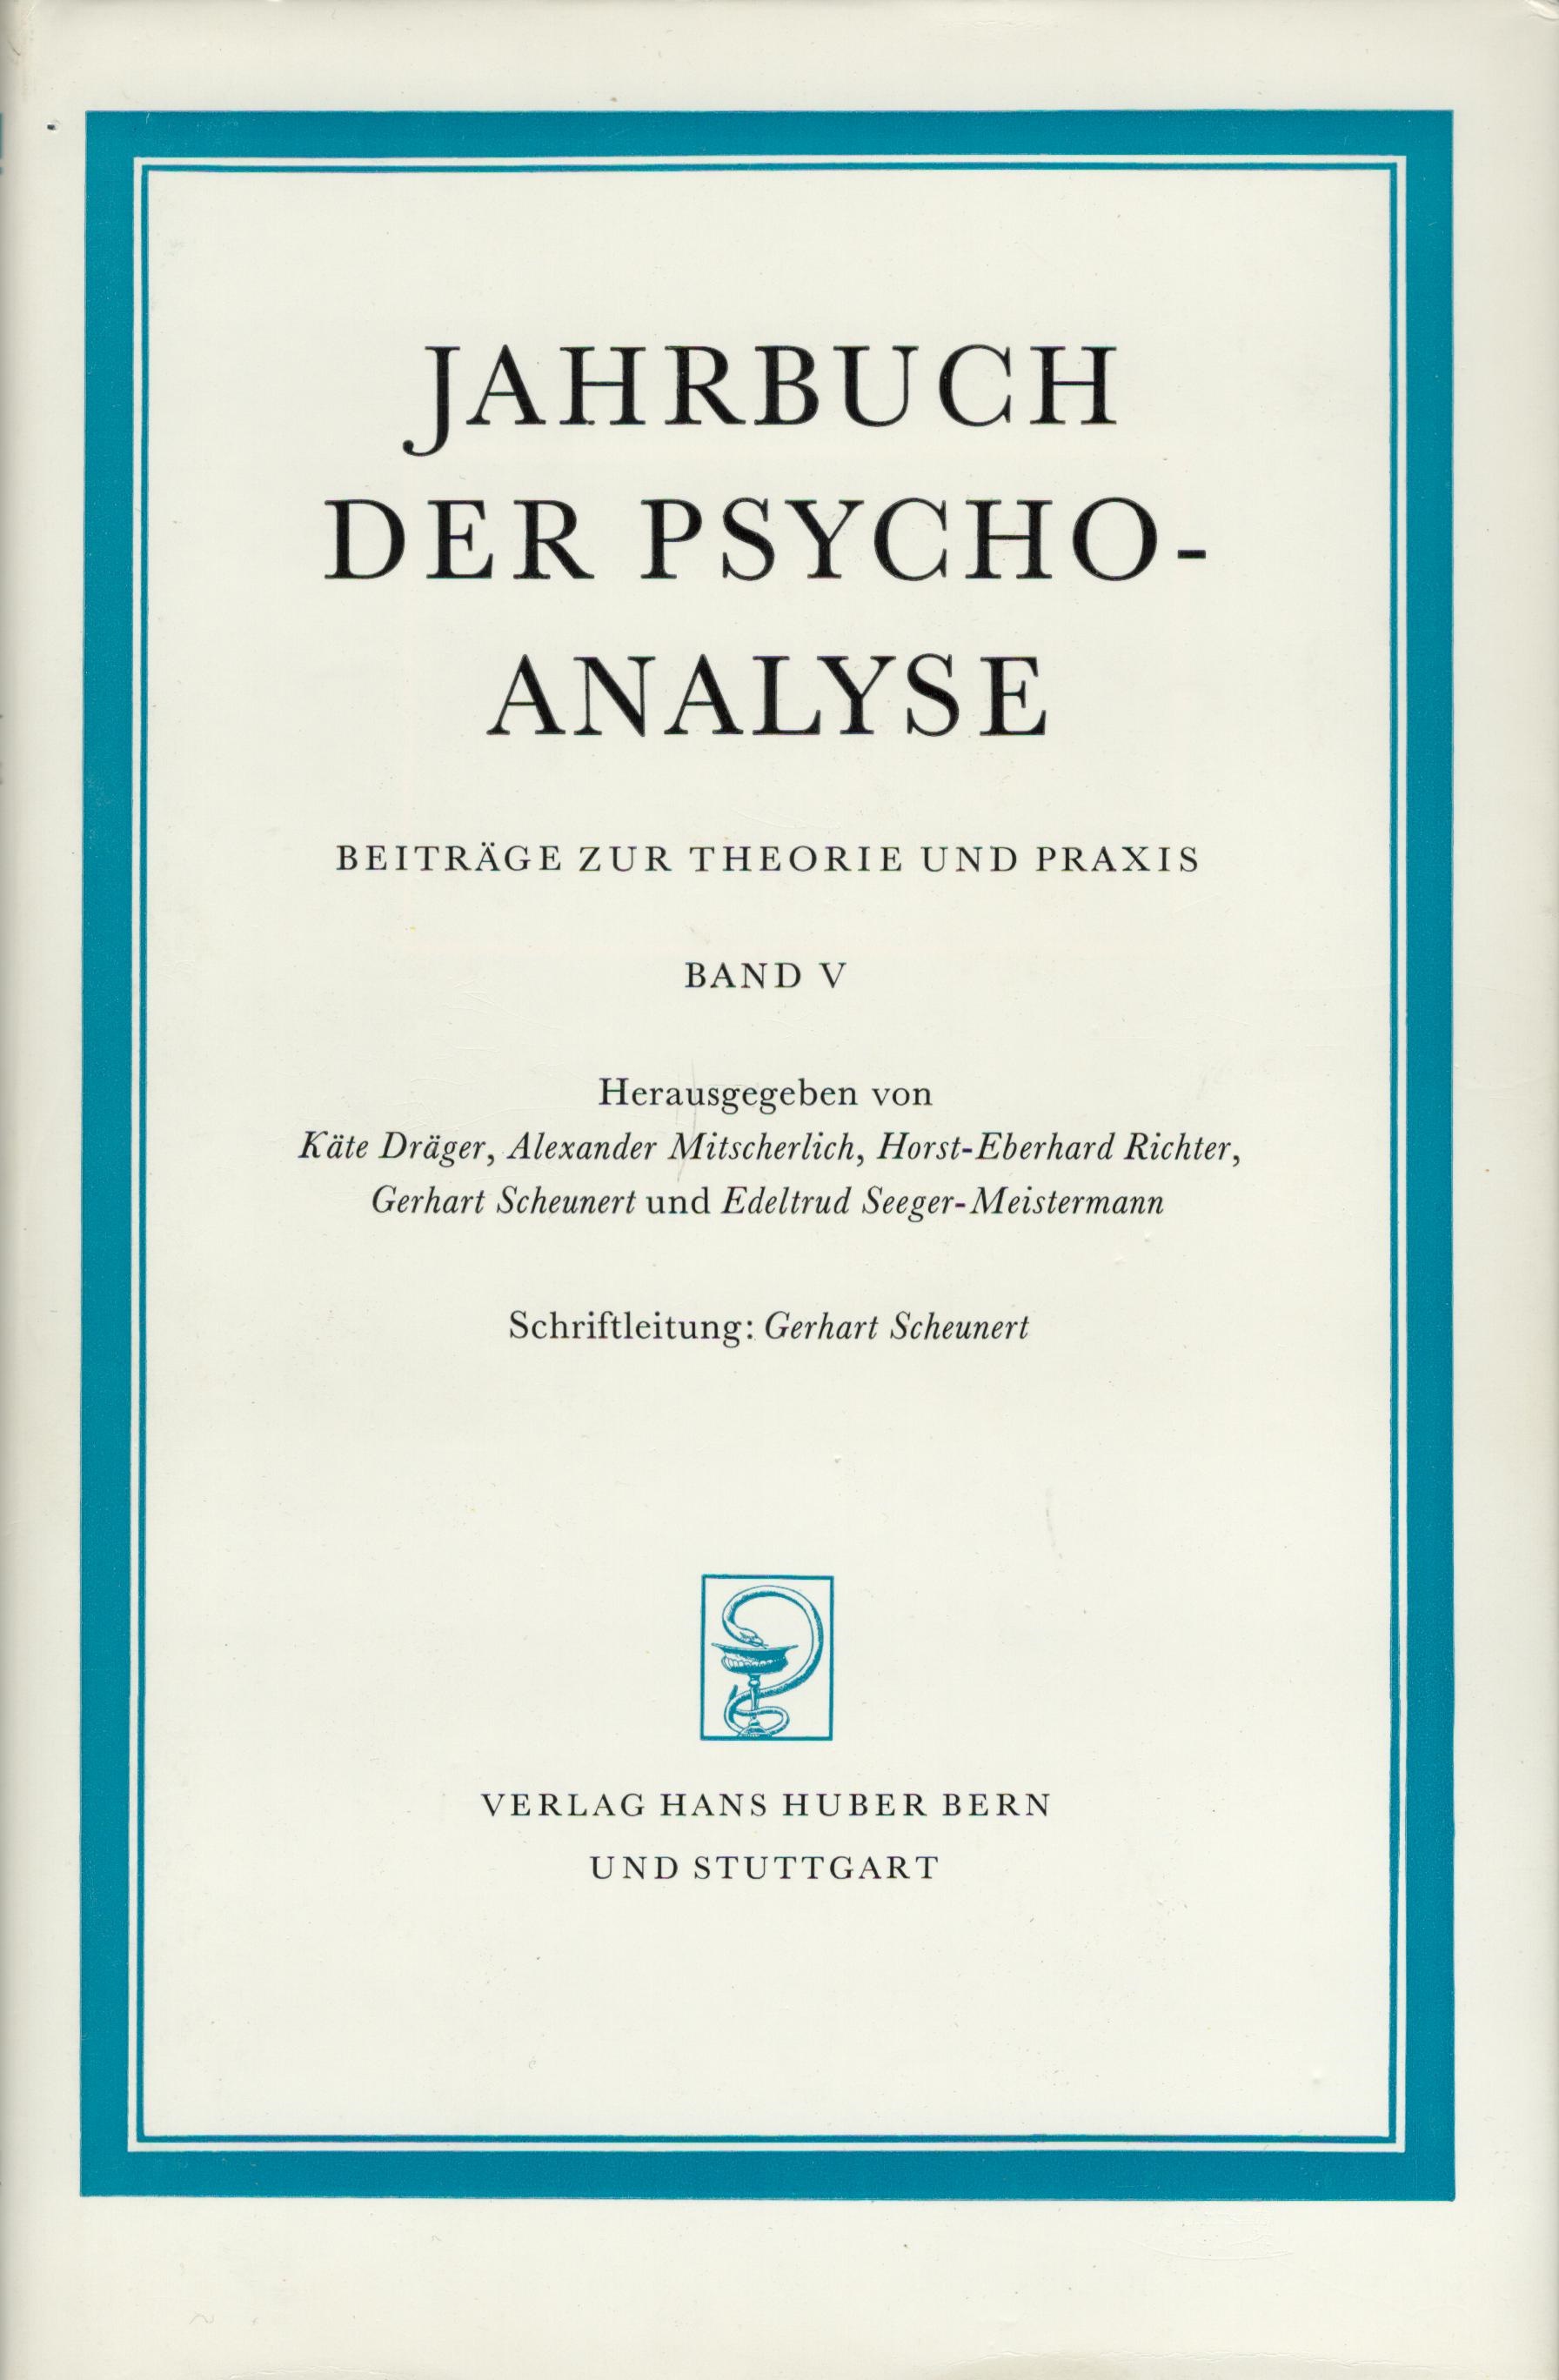 Jahrbuch der Psychoanalyse Band 6 - vorderer Schutzumschlag